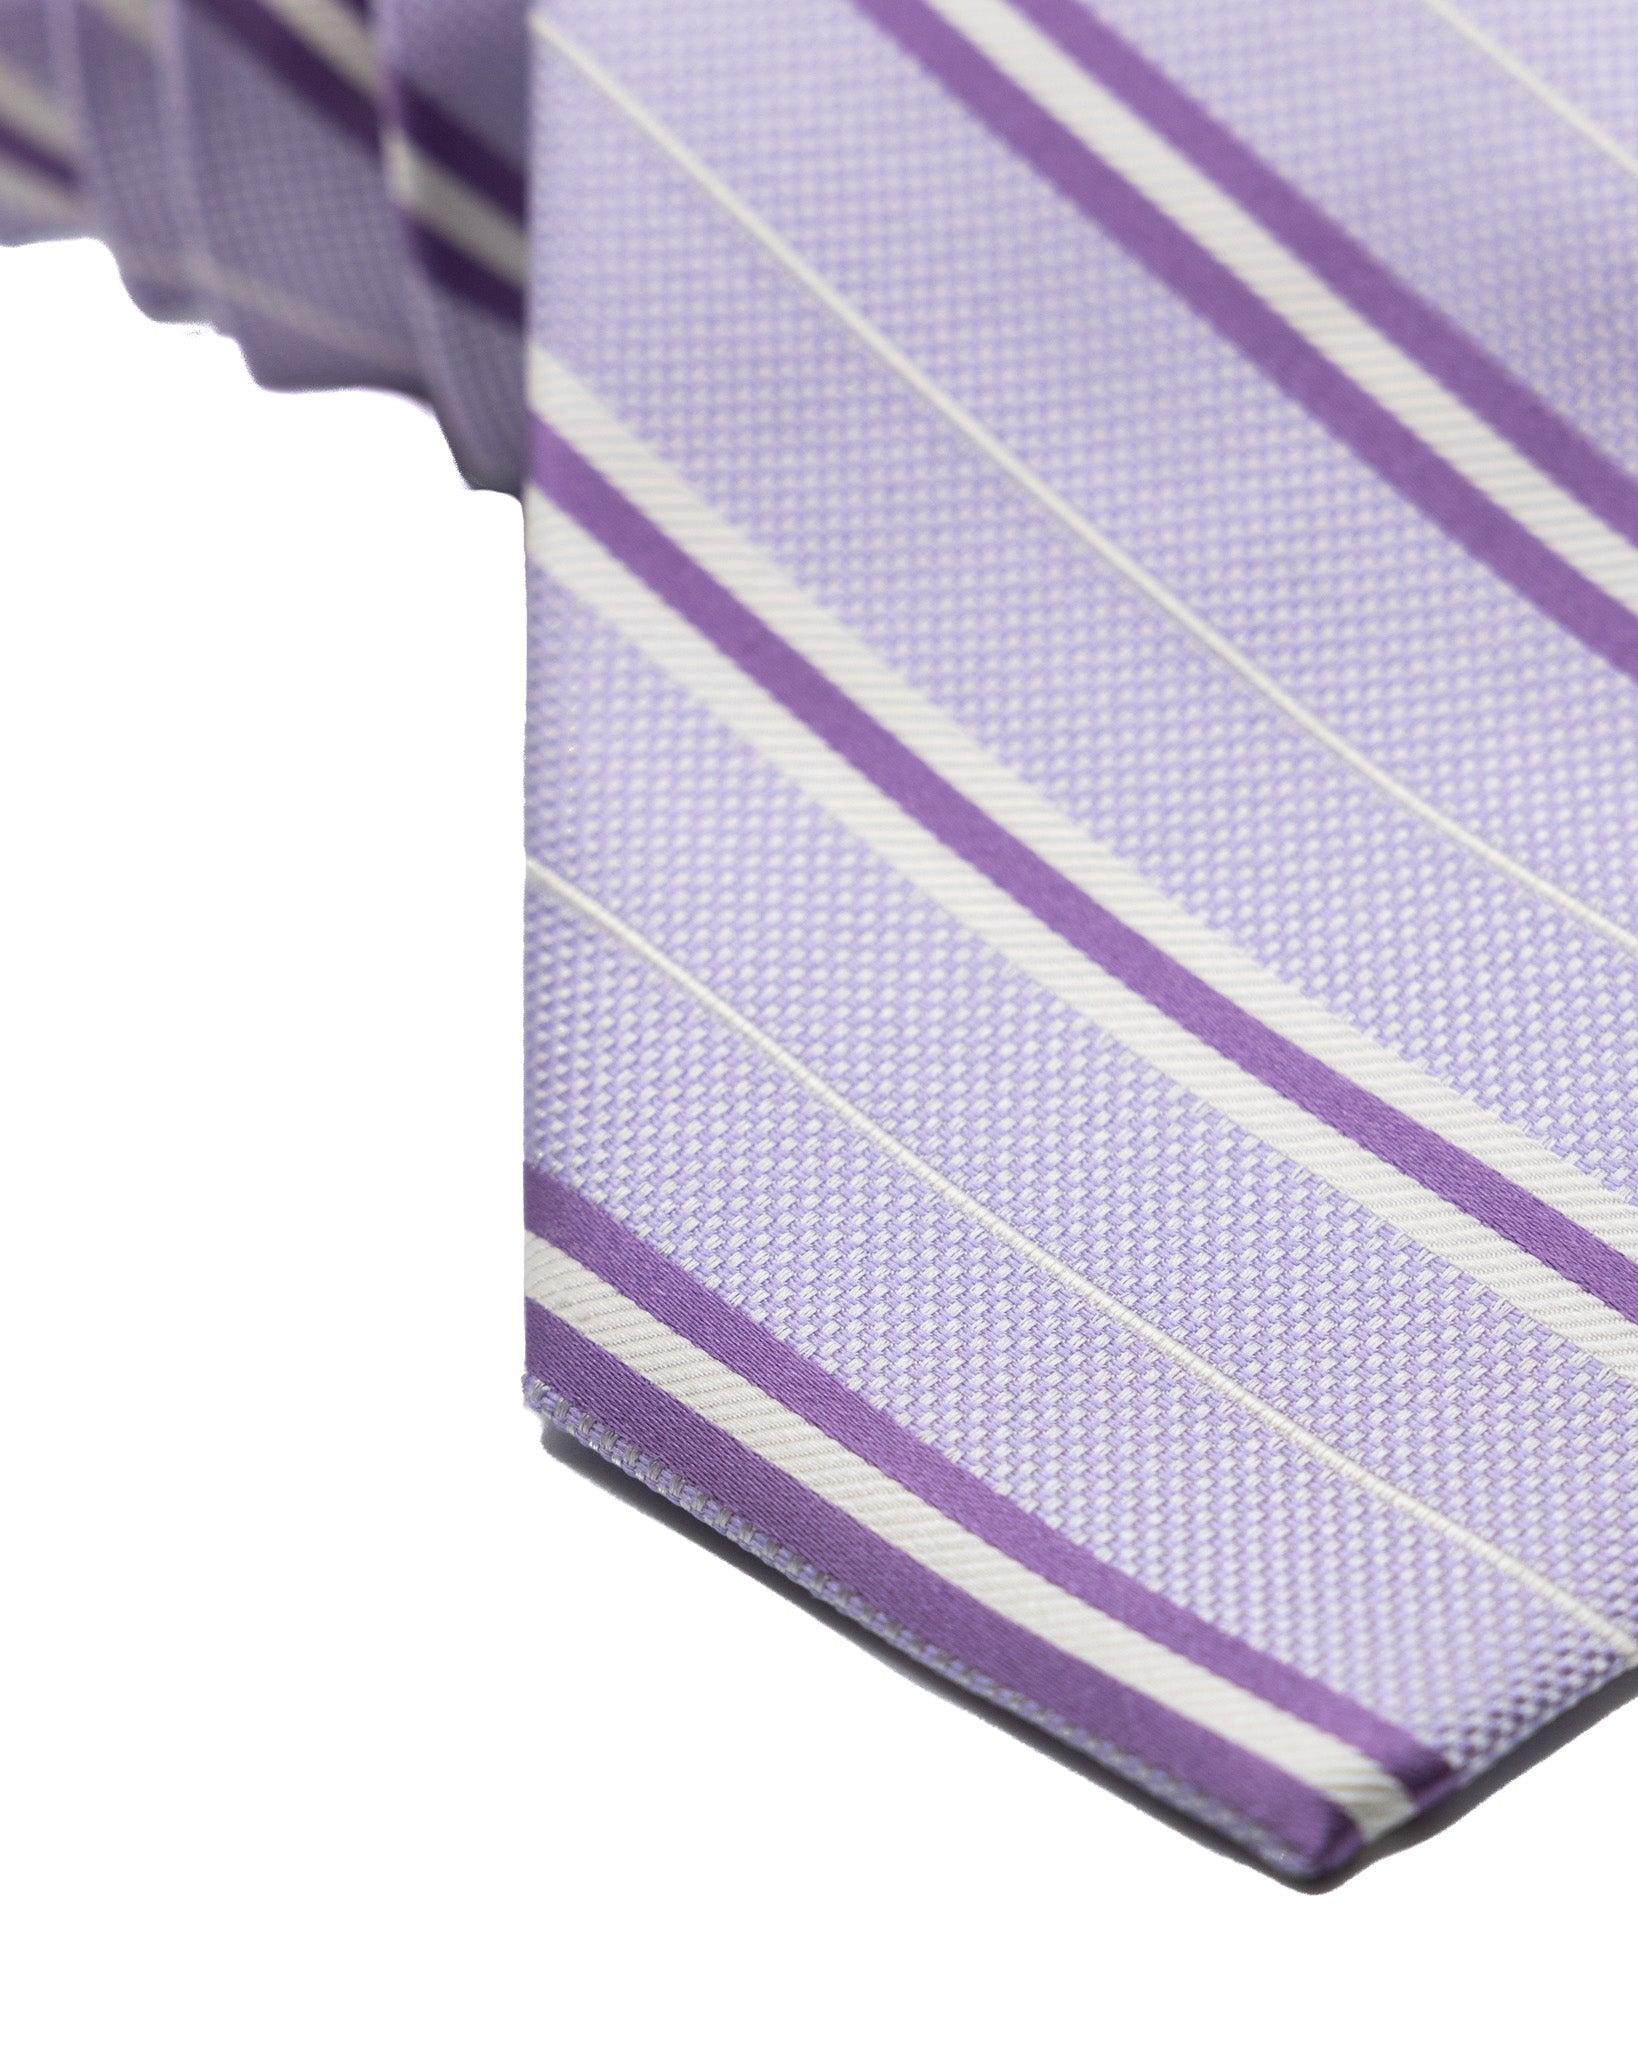 Cravatta - in seta lilla con righe